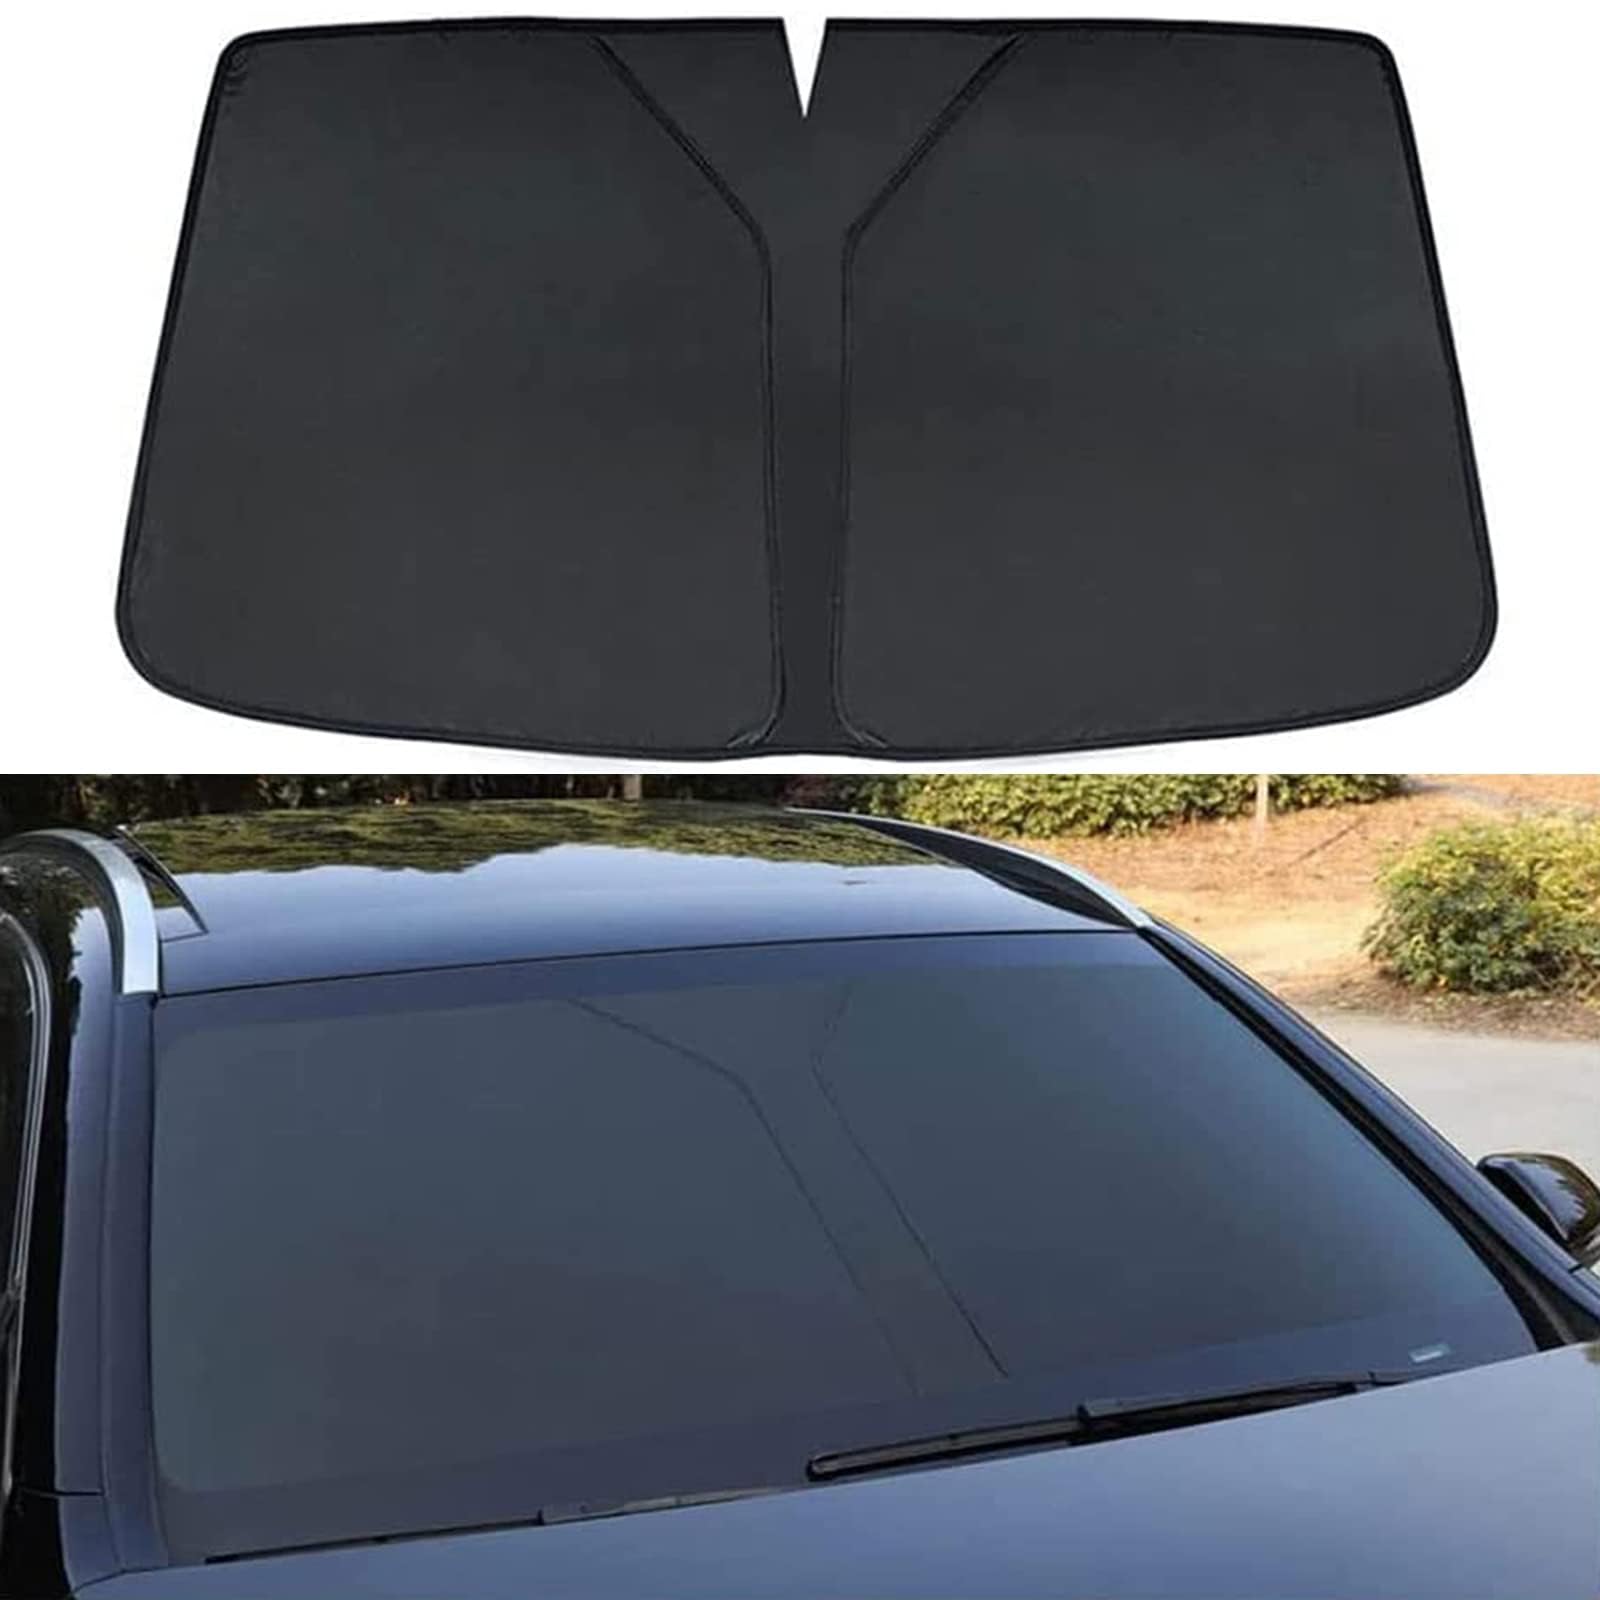 Auto Windschutzscheibe Sonnenschutz für Volvo S90,Verdunkelung Faltbar und Tragbar Wärmeisolierung Windschutzscheiben-Innenzubehör,Black von MUGONGWEI